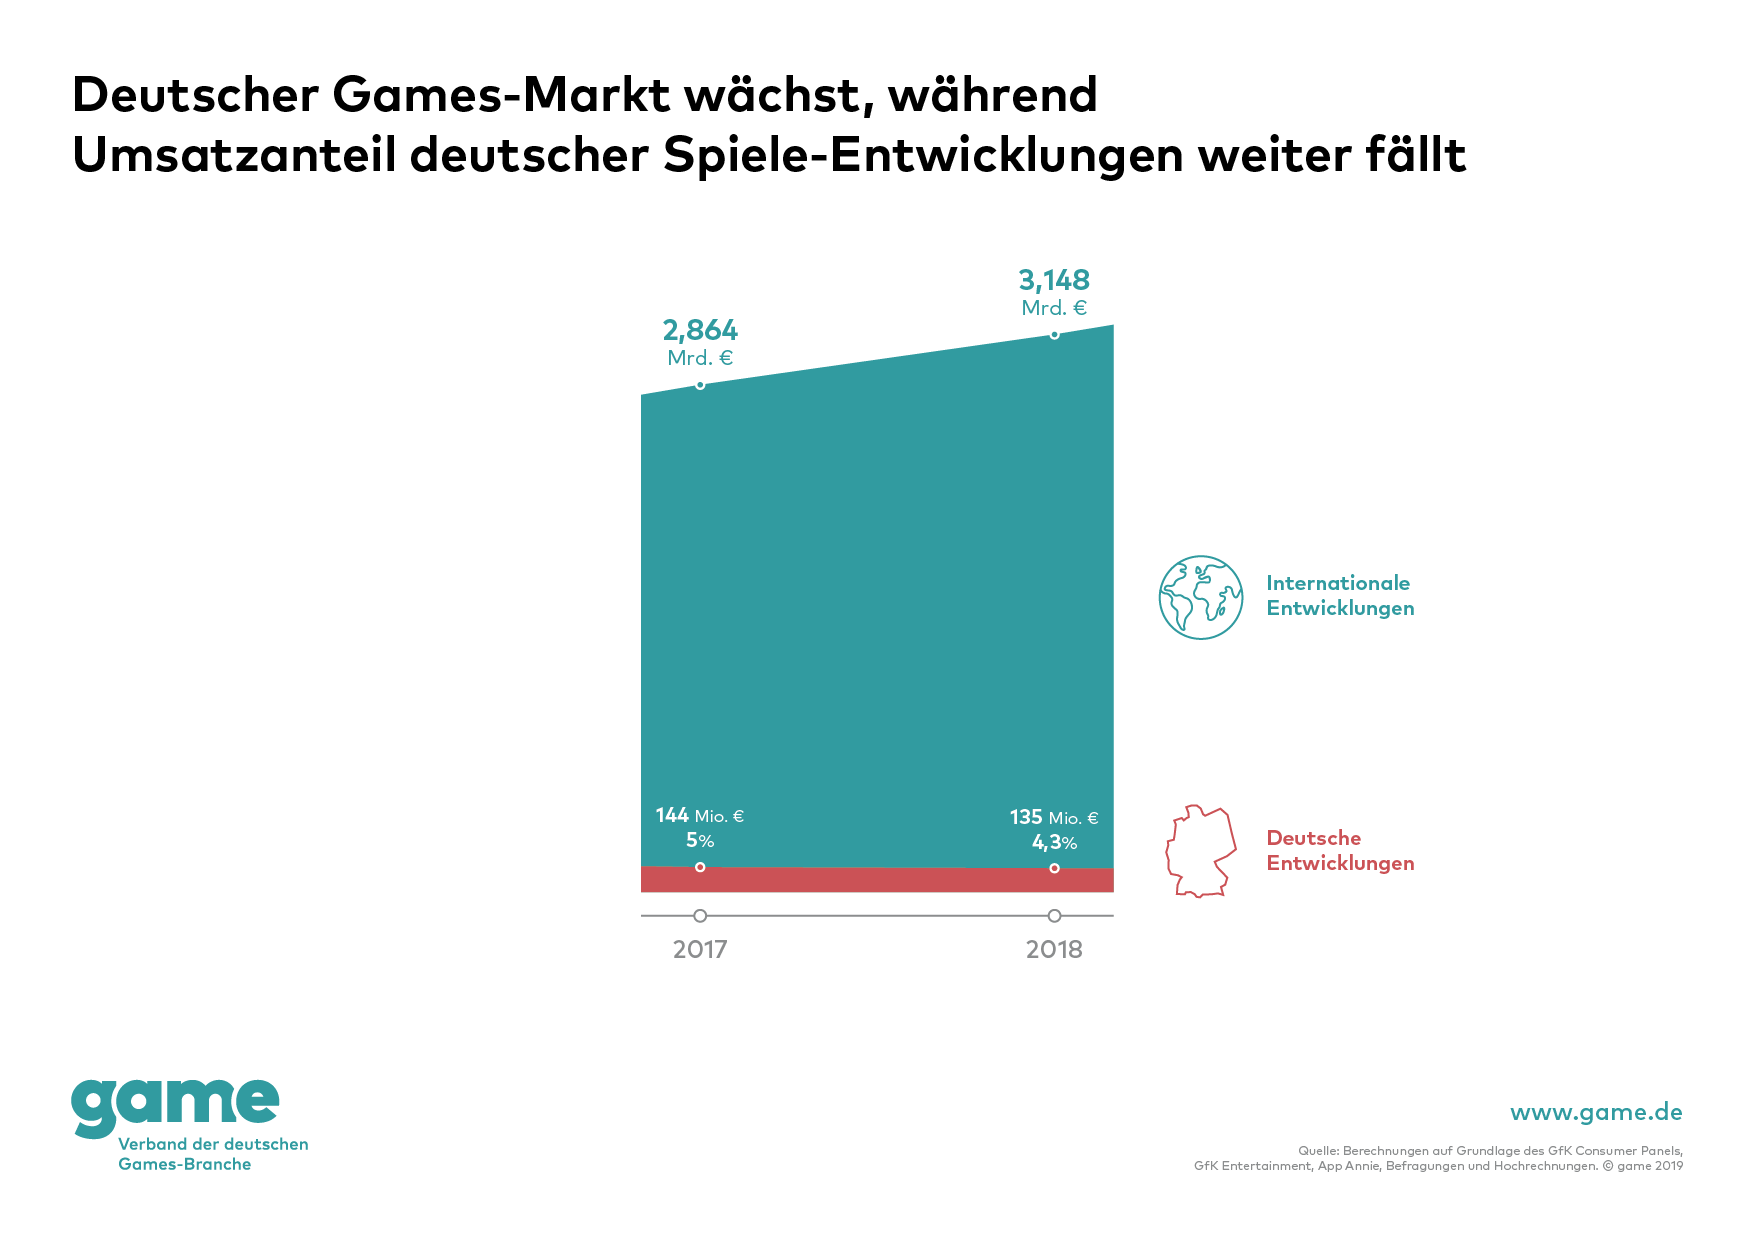 Umsatzanteile deutscher Spieleentwicklungen am deutschen Games-Markt 2018